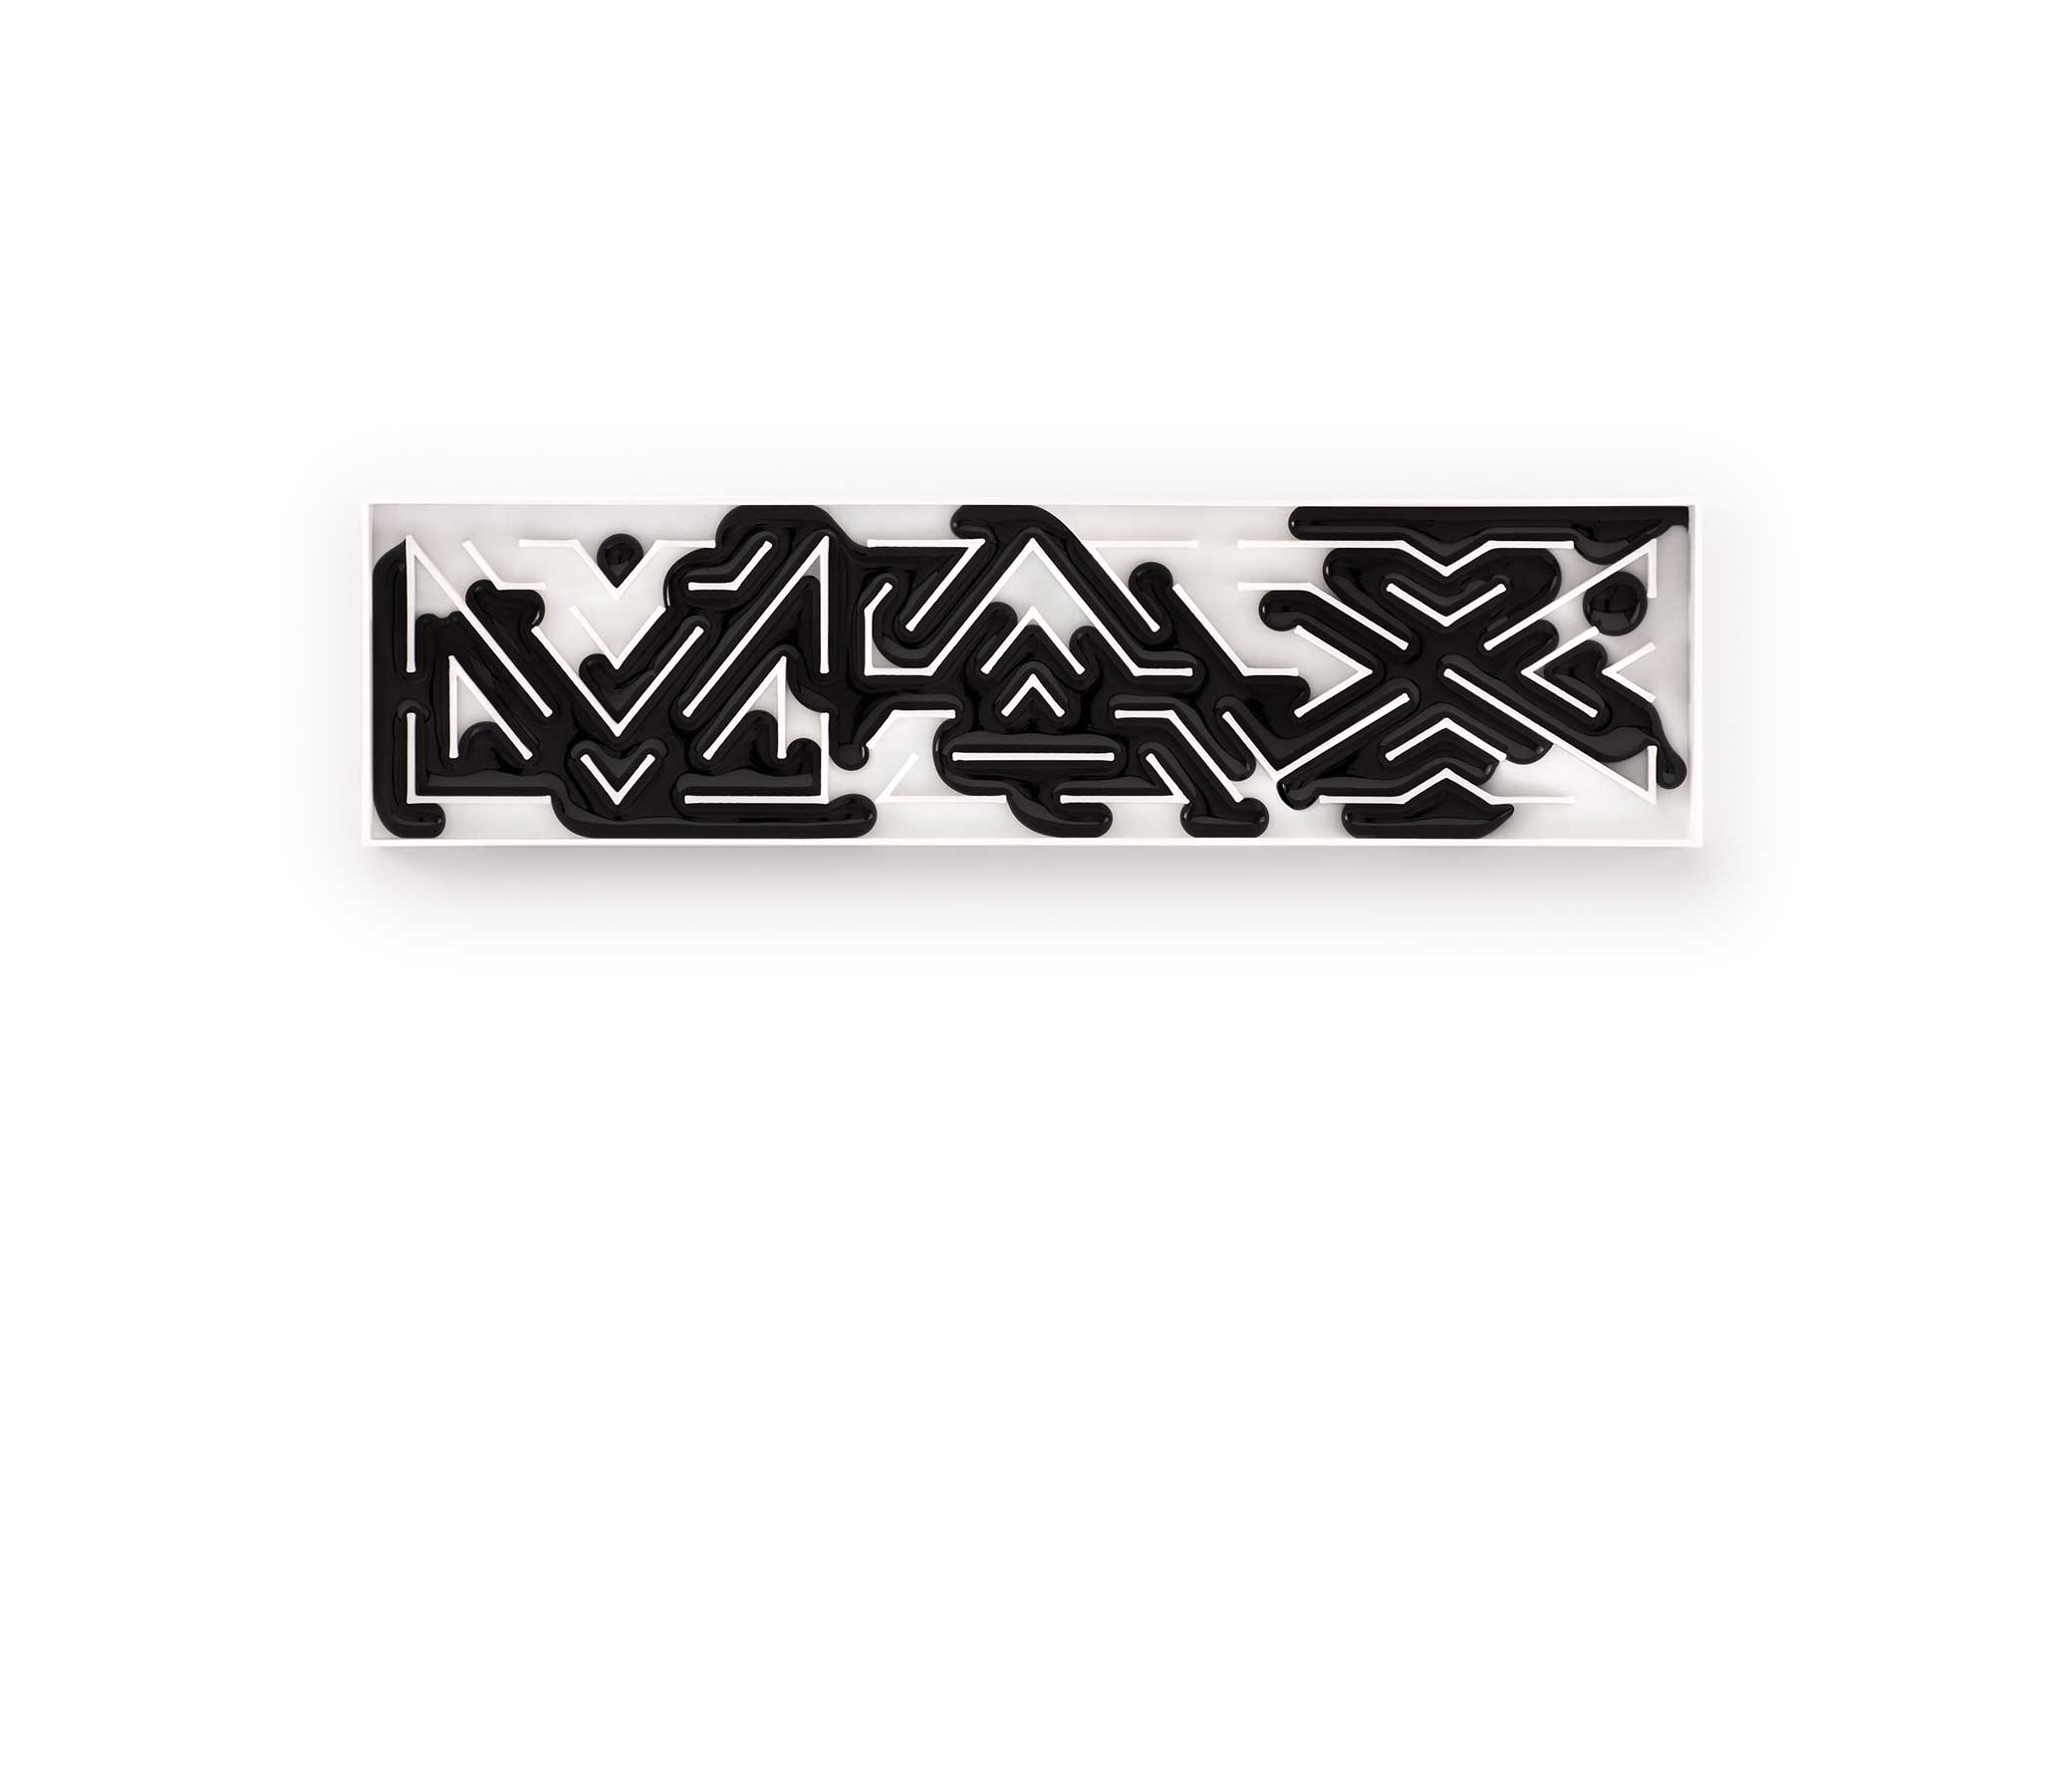 Max's Logo - Adobe MAX—The Creativity Conference